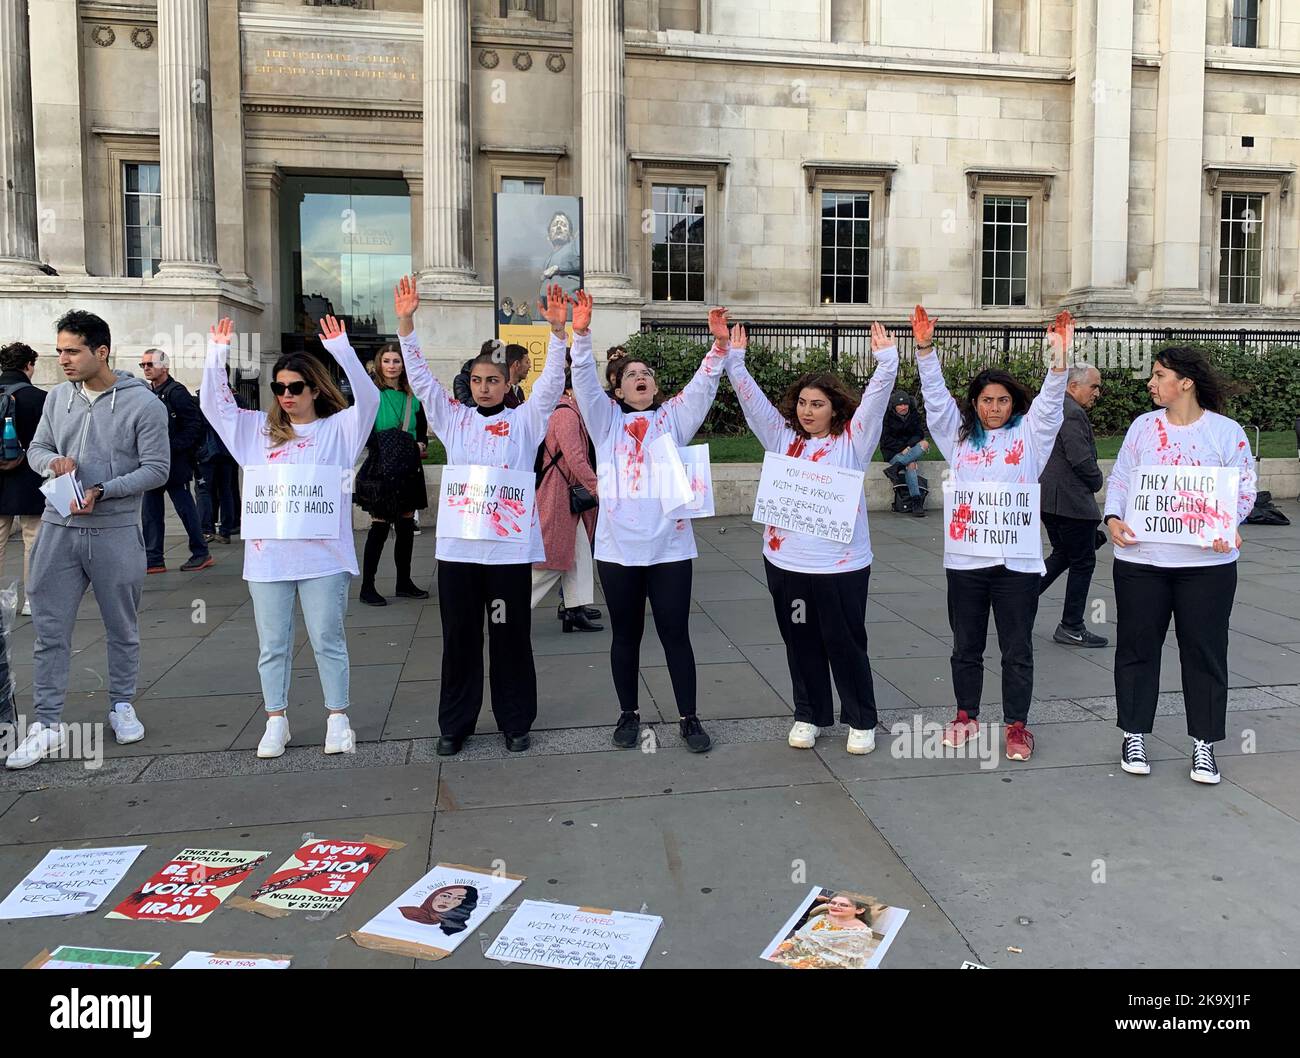 ANMERKUNG ZUR SPRACHE AUF PLACRADS Mitglieder von United4Mahsa nehmen an einer Demonstration auf dem Trafalgar Square, London, über den Tod des Iraners Mahsa Amini Teil, einer 22-jährigen Frau, die im Iran während der Polizeihaft starb, nachdem sie von der iranischen Moralpolizei verhaftet wurde, weil sie angeblich gegen die strikt erzwungene Kleiderordnung verstoßen hatte. Bilddatum: Sonntag, 30. Oktober 2022. Stockfoto